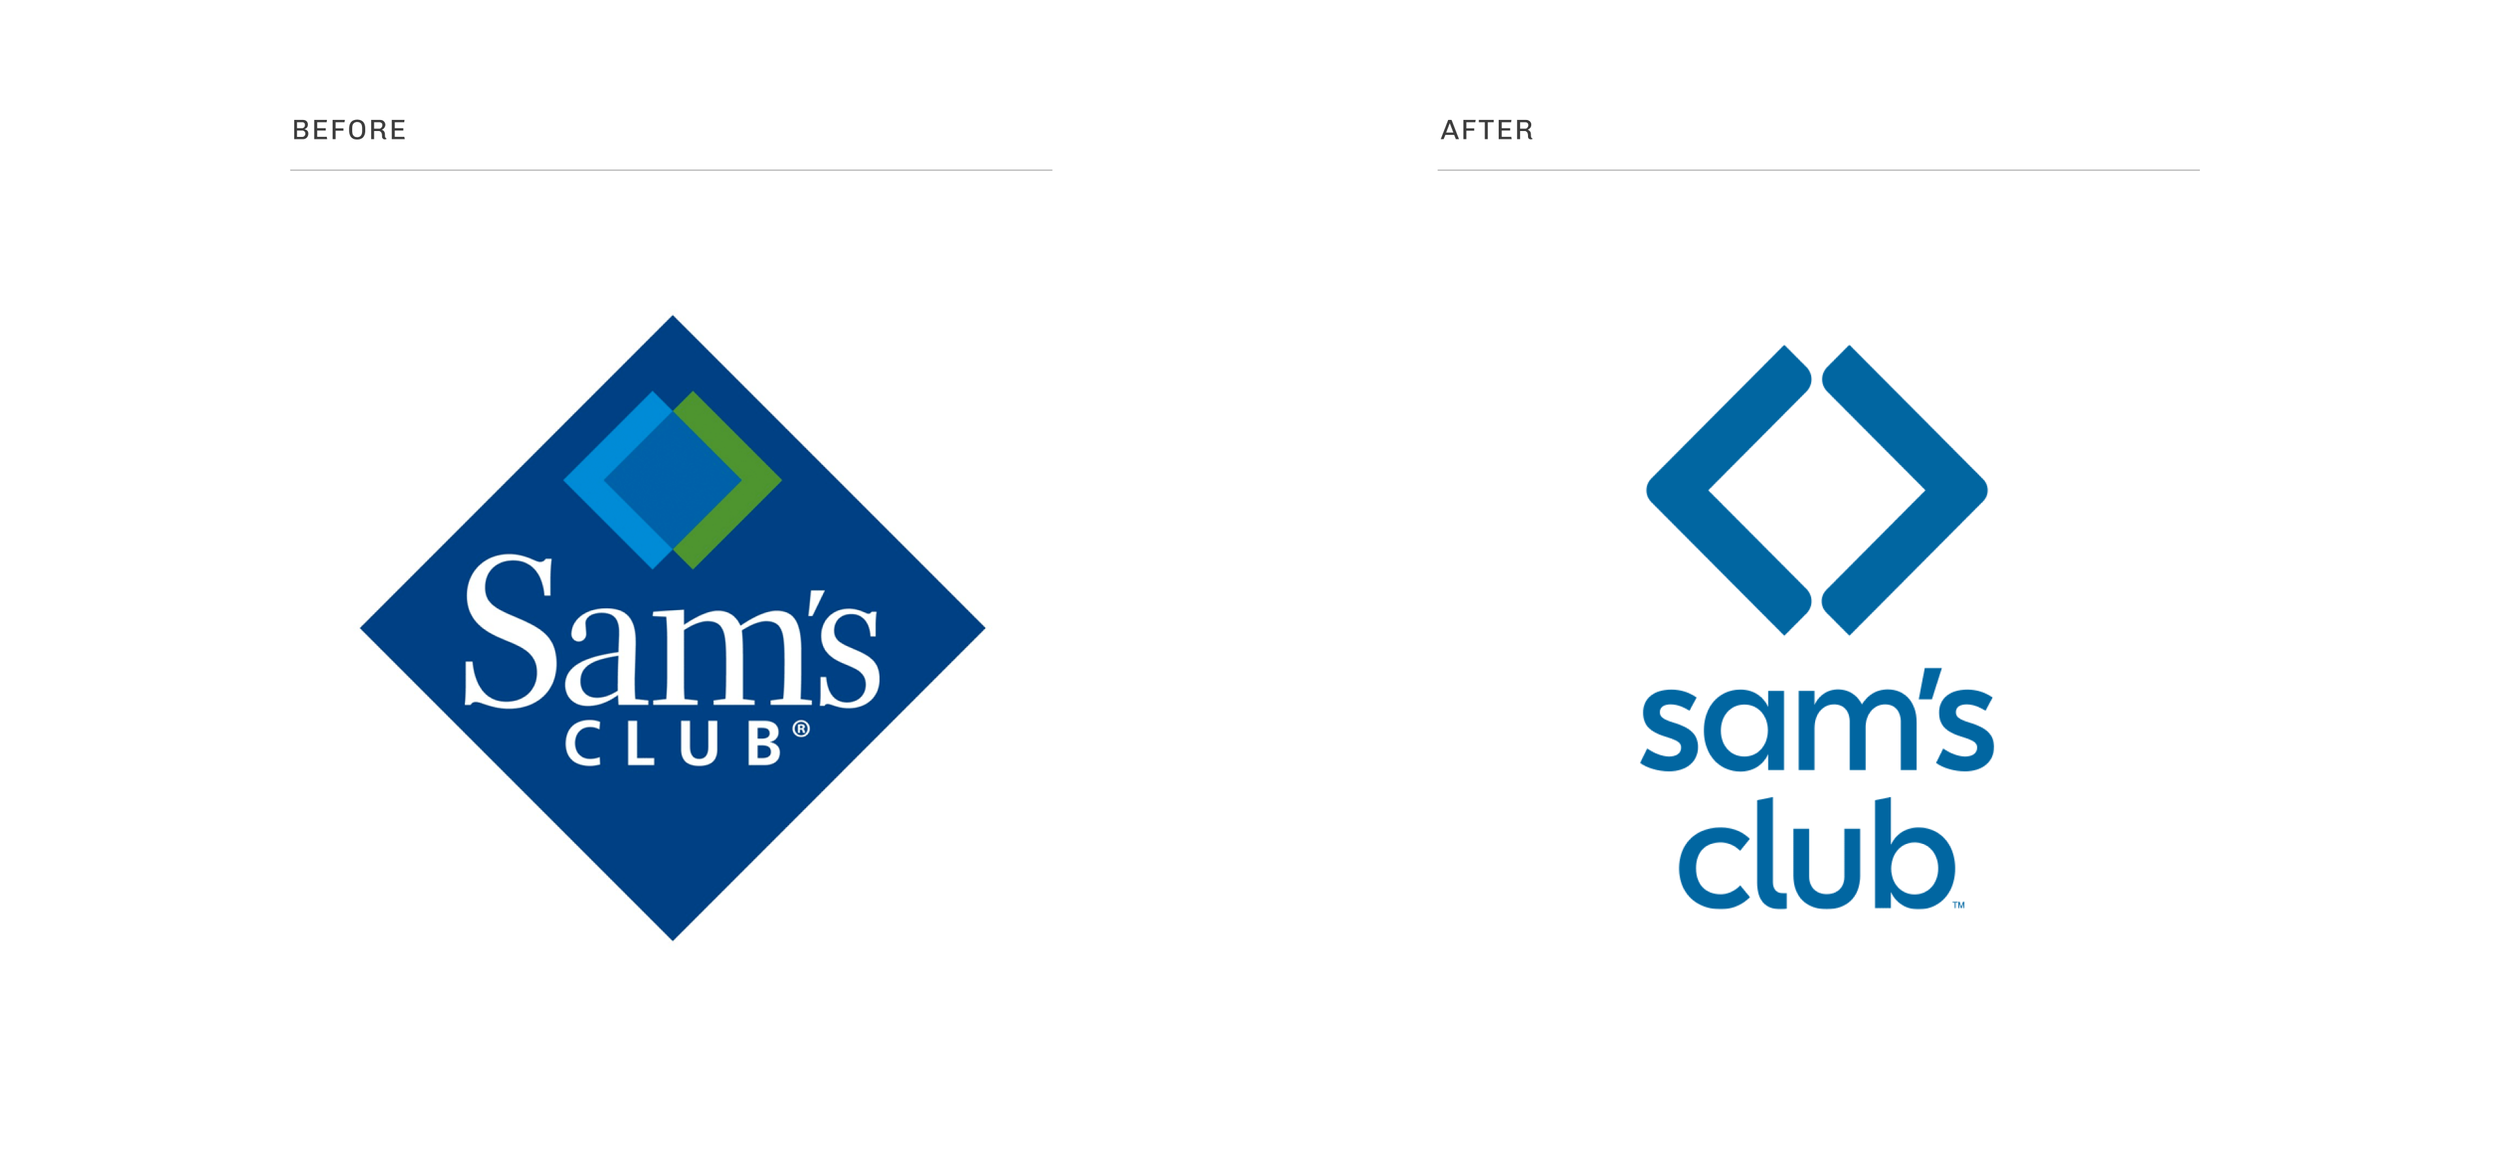 argodesign—Sam's Club